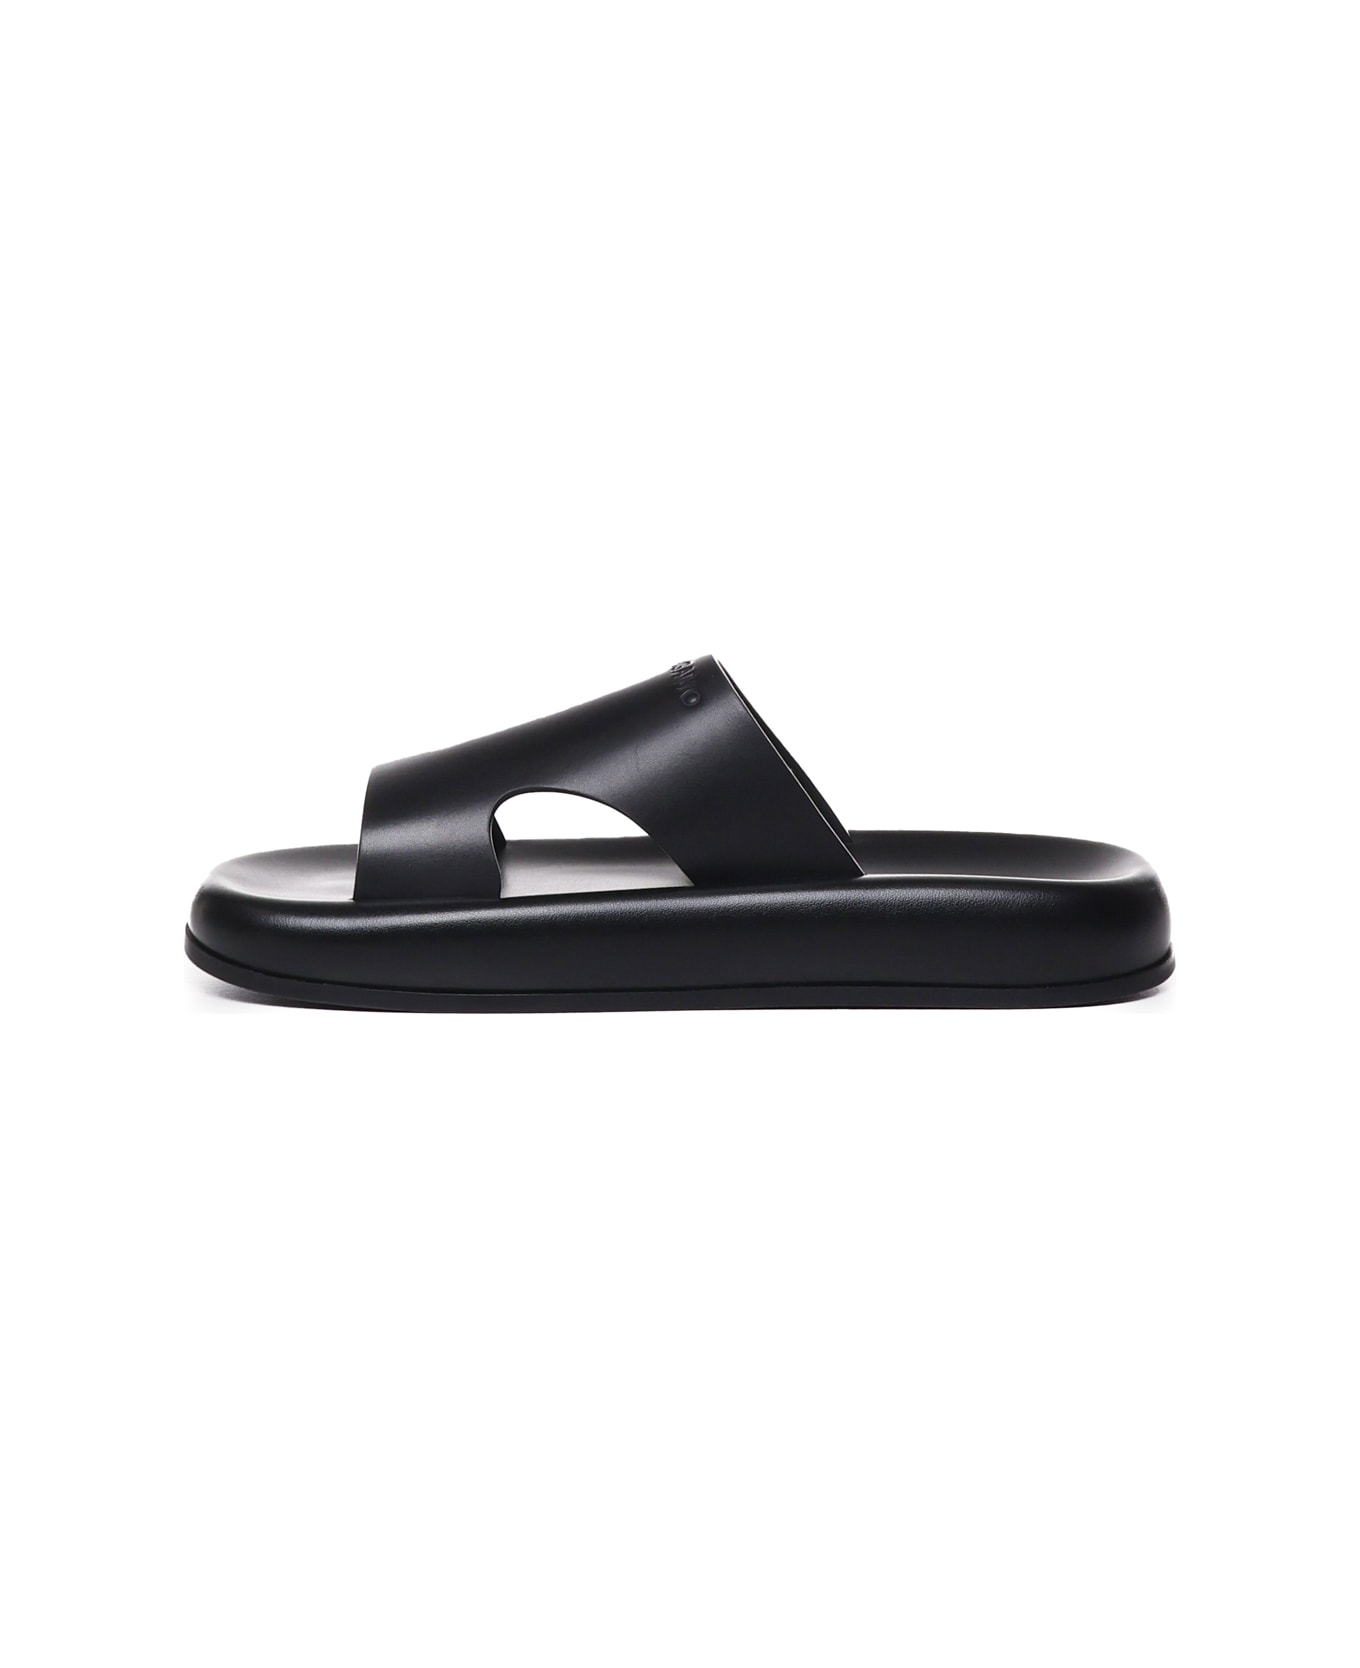 Ferragamo Sandals With Cut-out Detail - Black